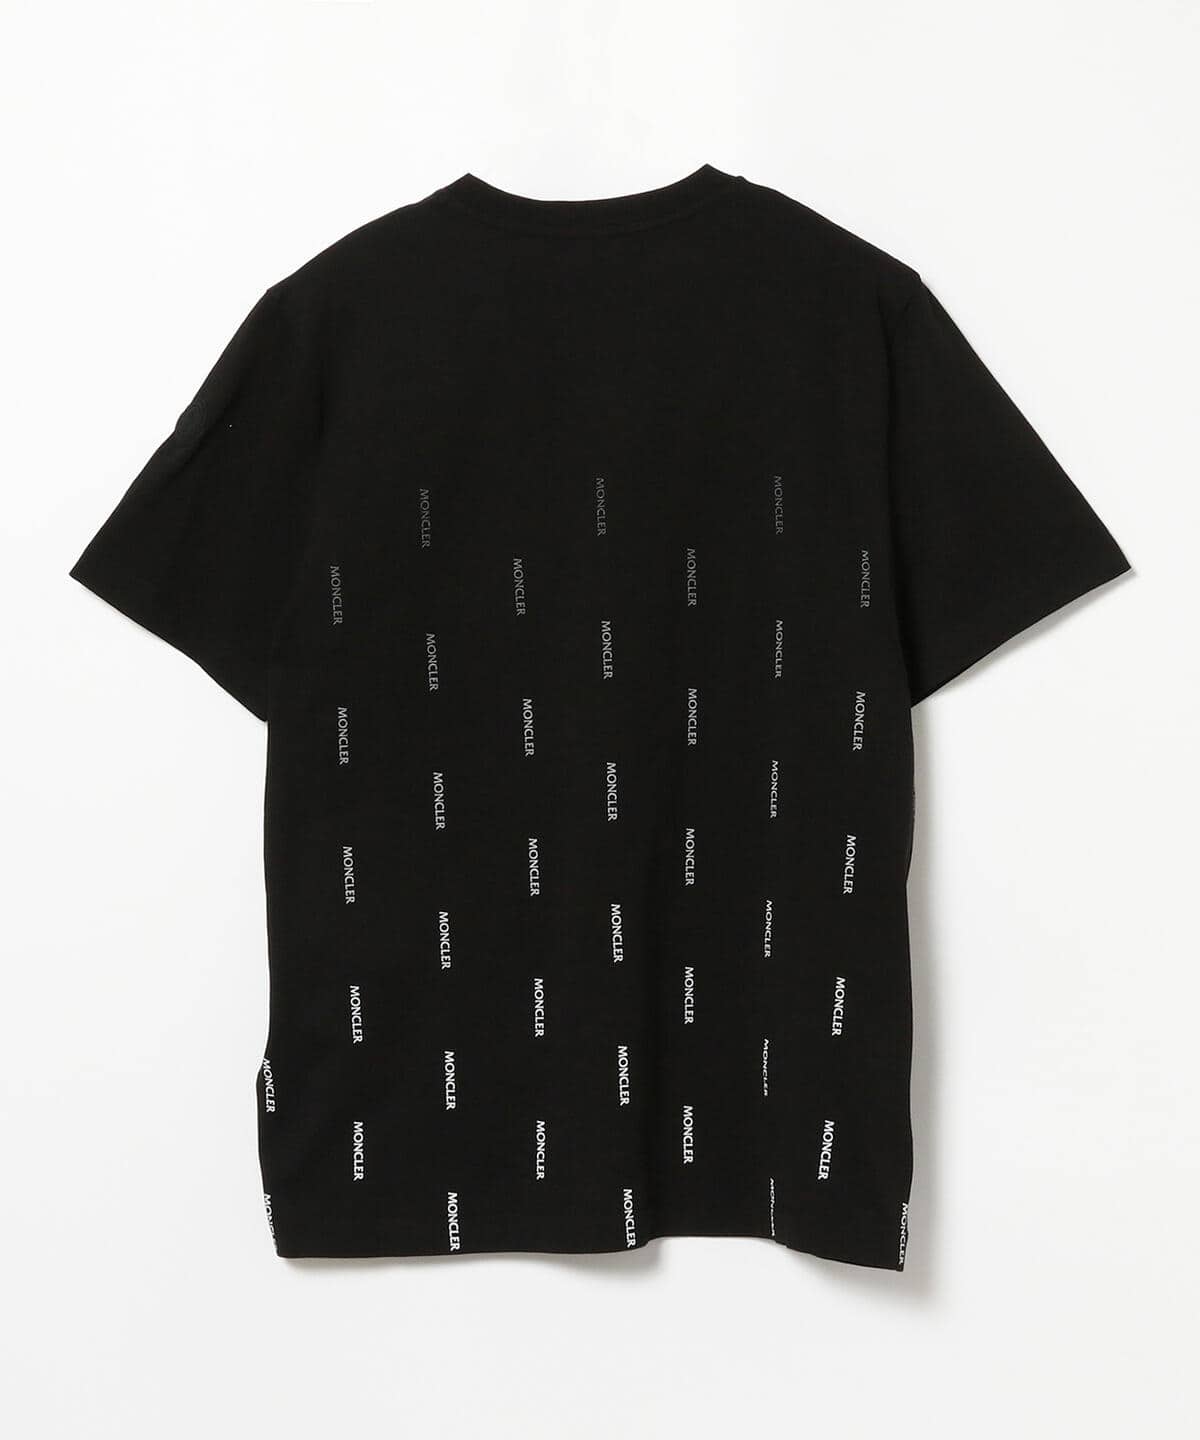 BEAMS F（ビームスF）MONCLER / ロゴ クルーネック Tシャツ（Tシャツ ...